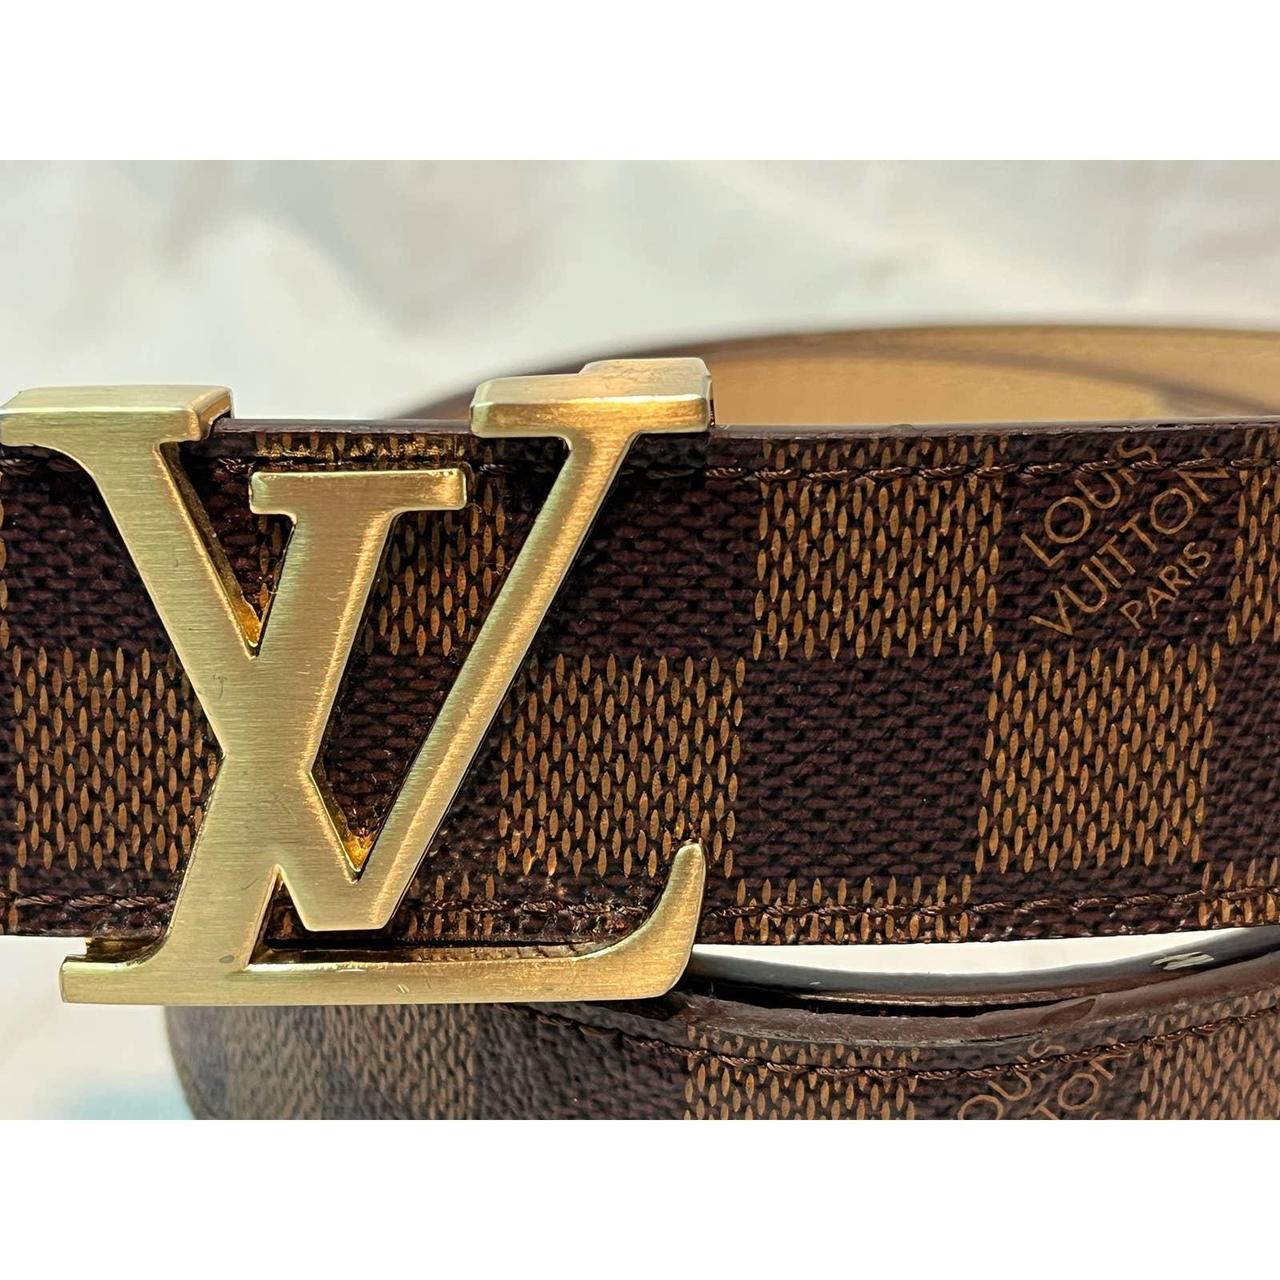 Louis Vuitton black buckle, brown plaid size 32 - Depop